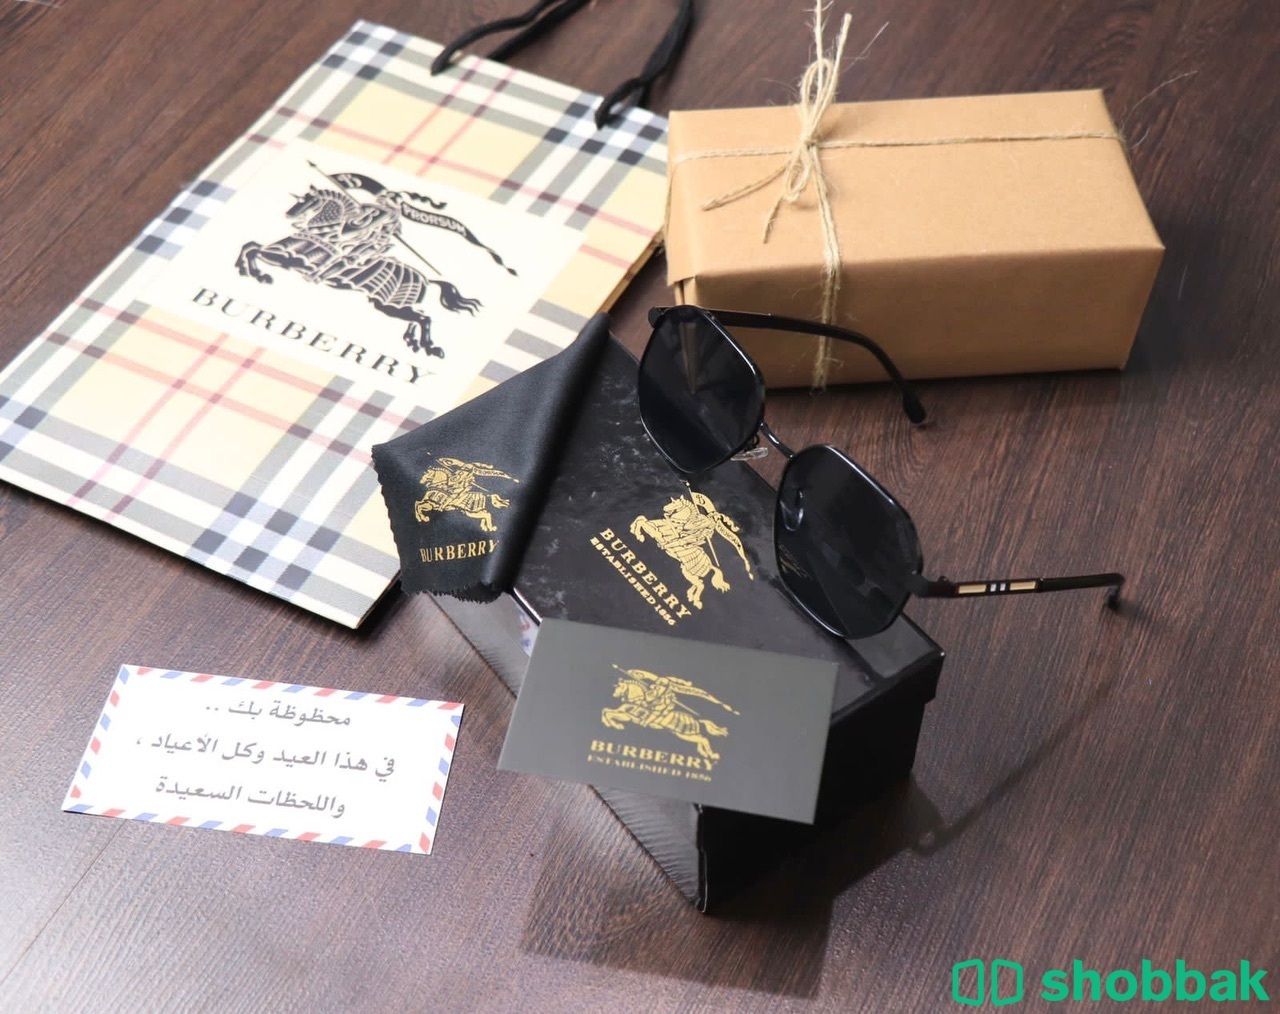 نظارات بربري مع جميع الملحقات والتغليف  Shobbak Saudi Arabia